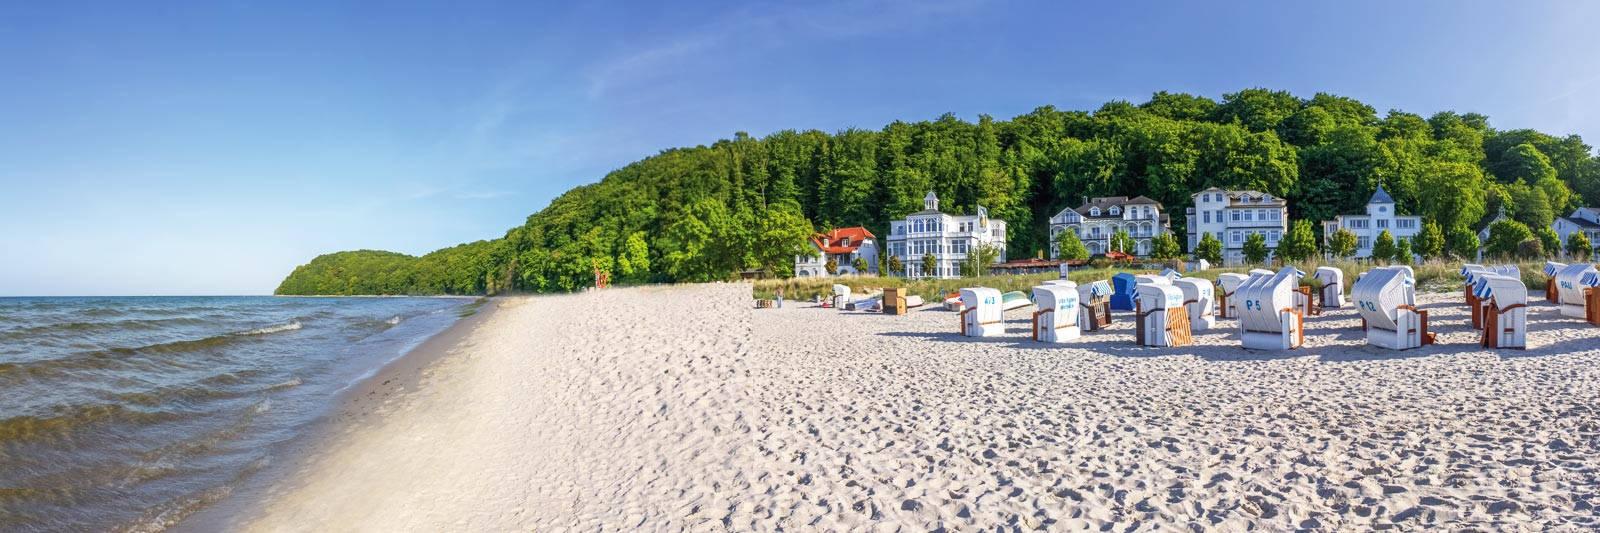 15 Ferienwohnungen und Ferienhäuser in Stiepelse - tourist-online.de